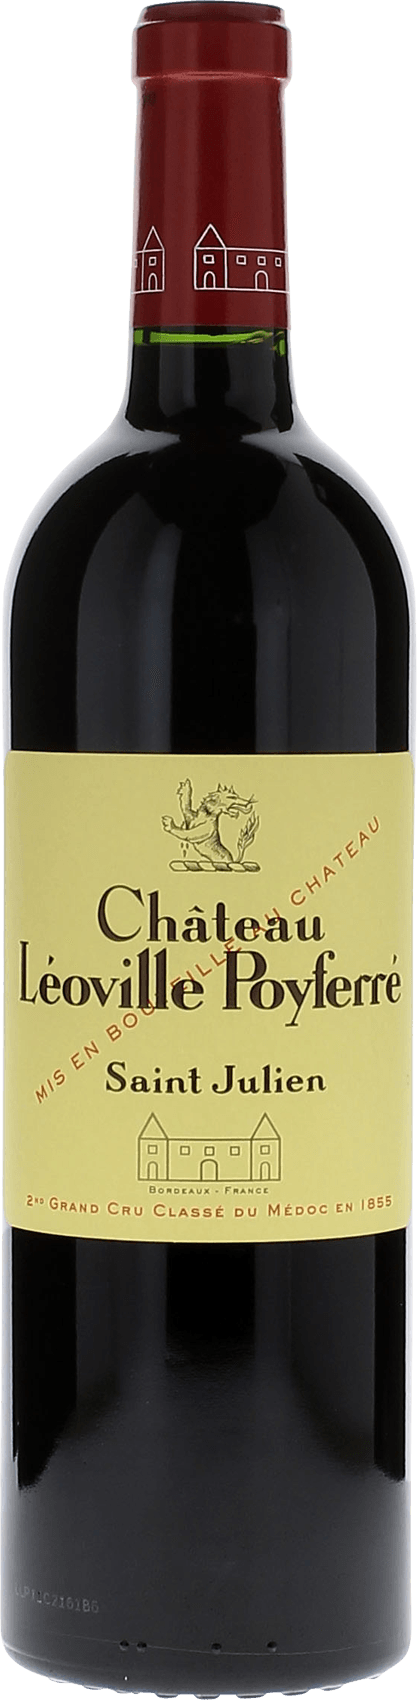 Leoville poyferre 1996 2me Grand cru class Saint-Julien, Bordeaux rouge